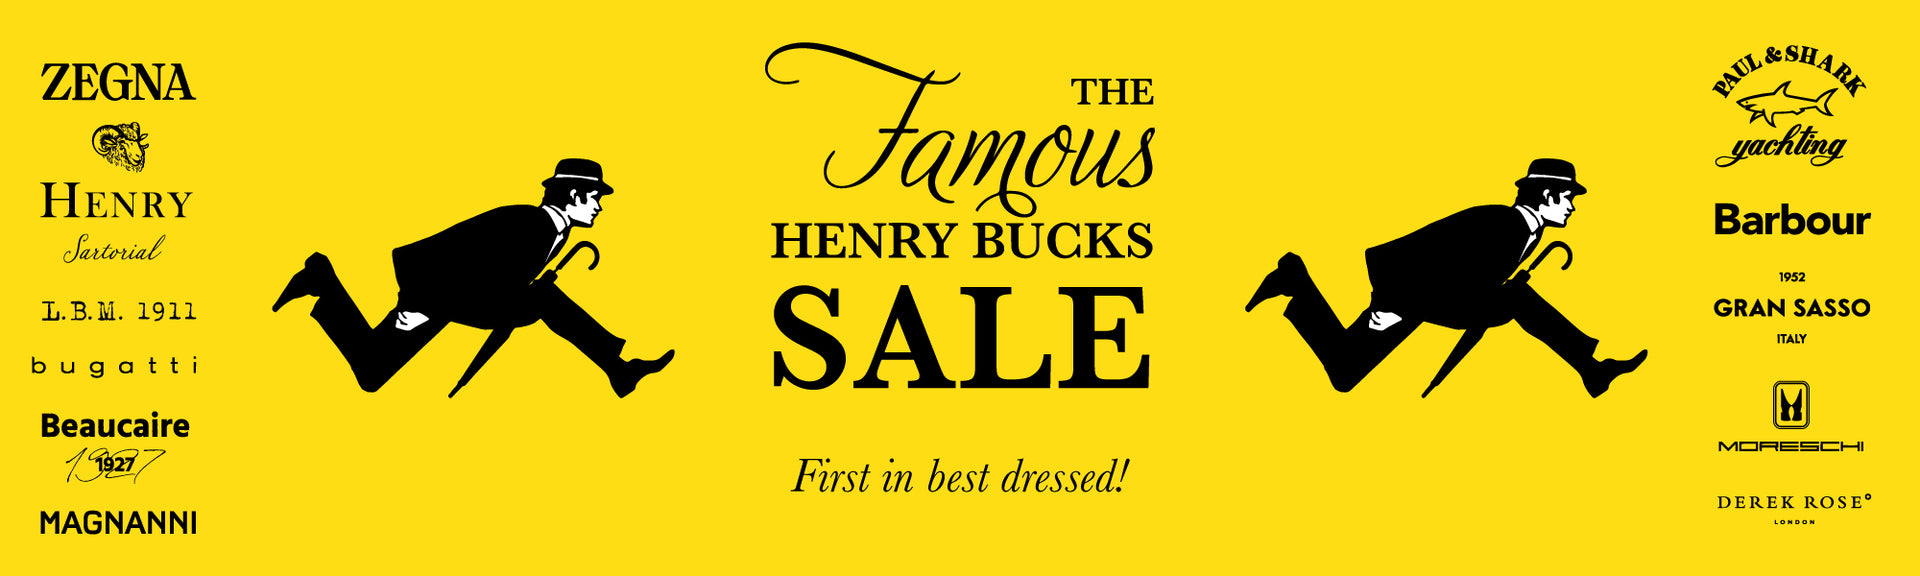 Knitwear | The Famous Henry Bucks Sale